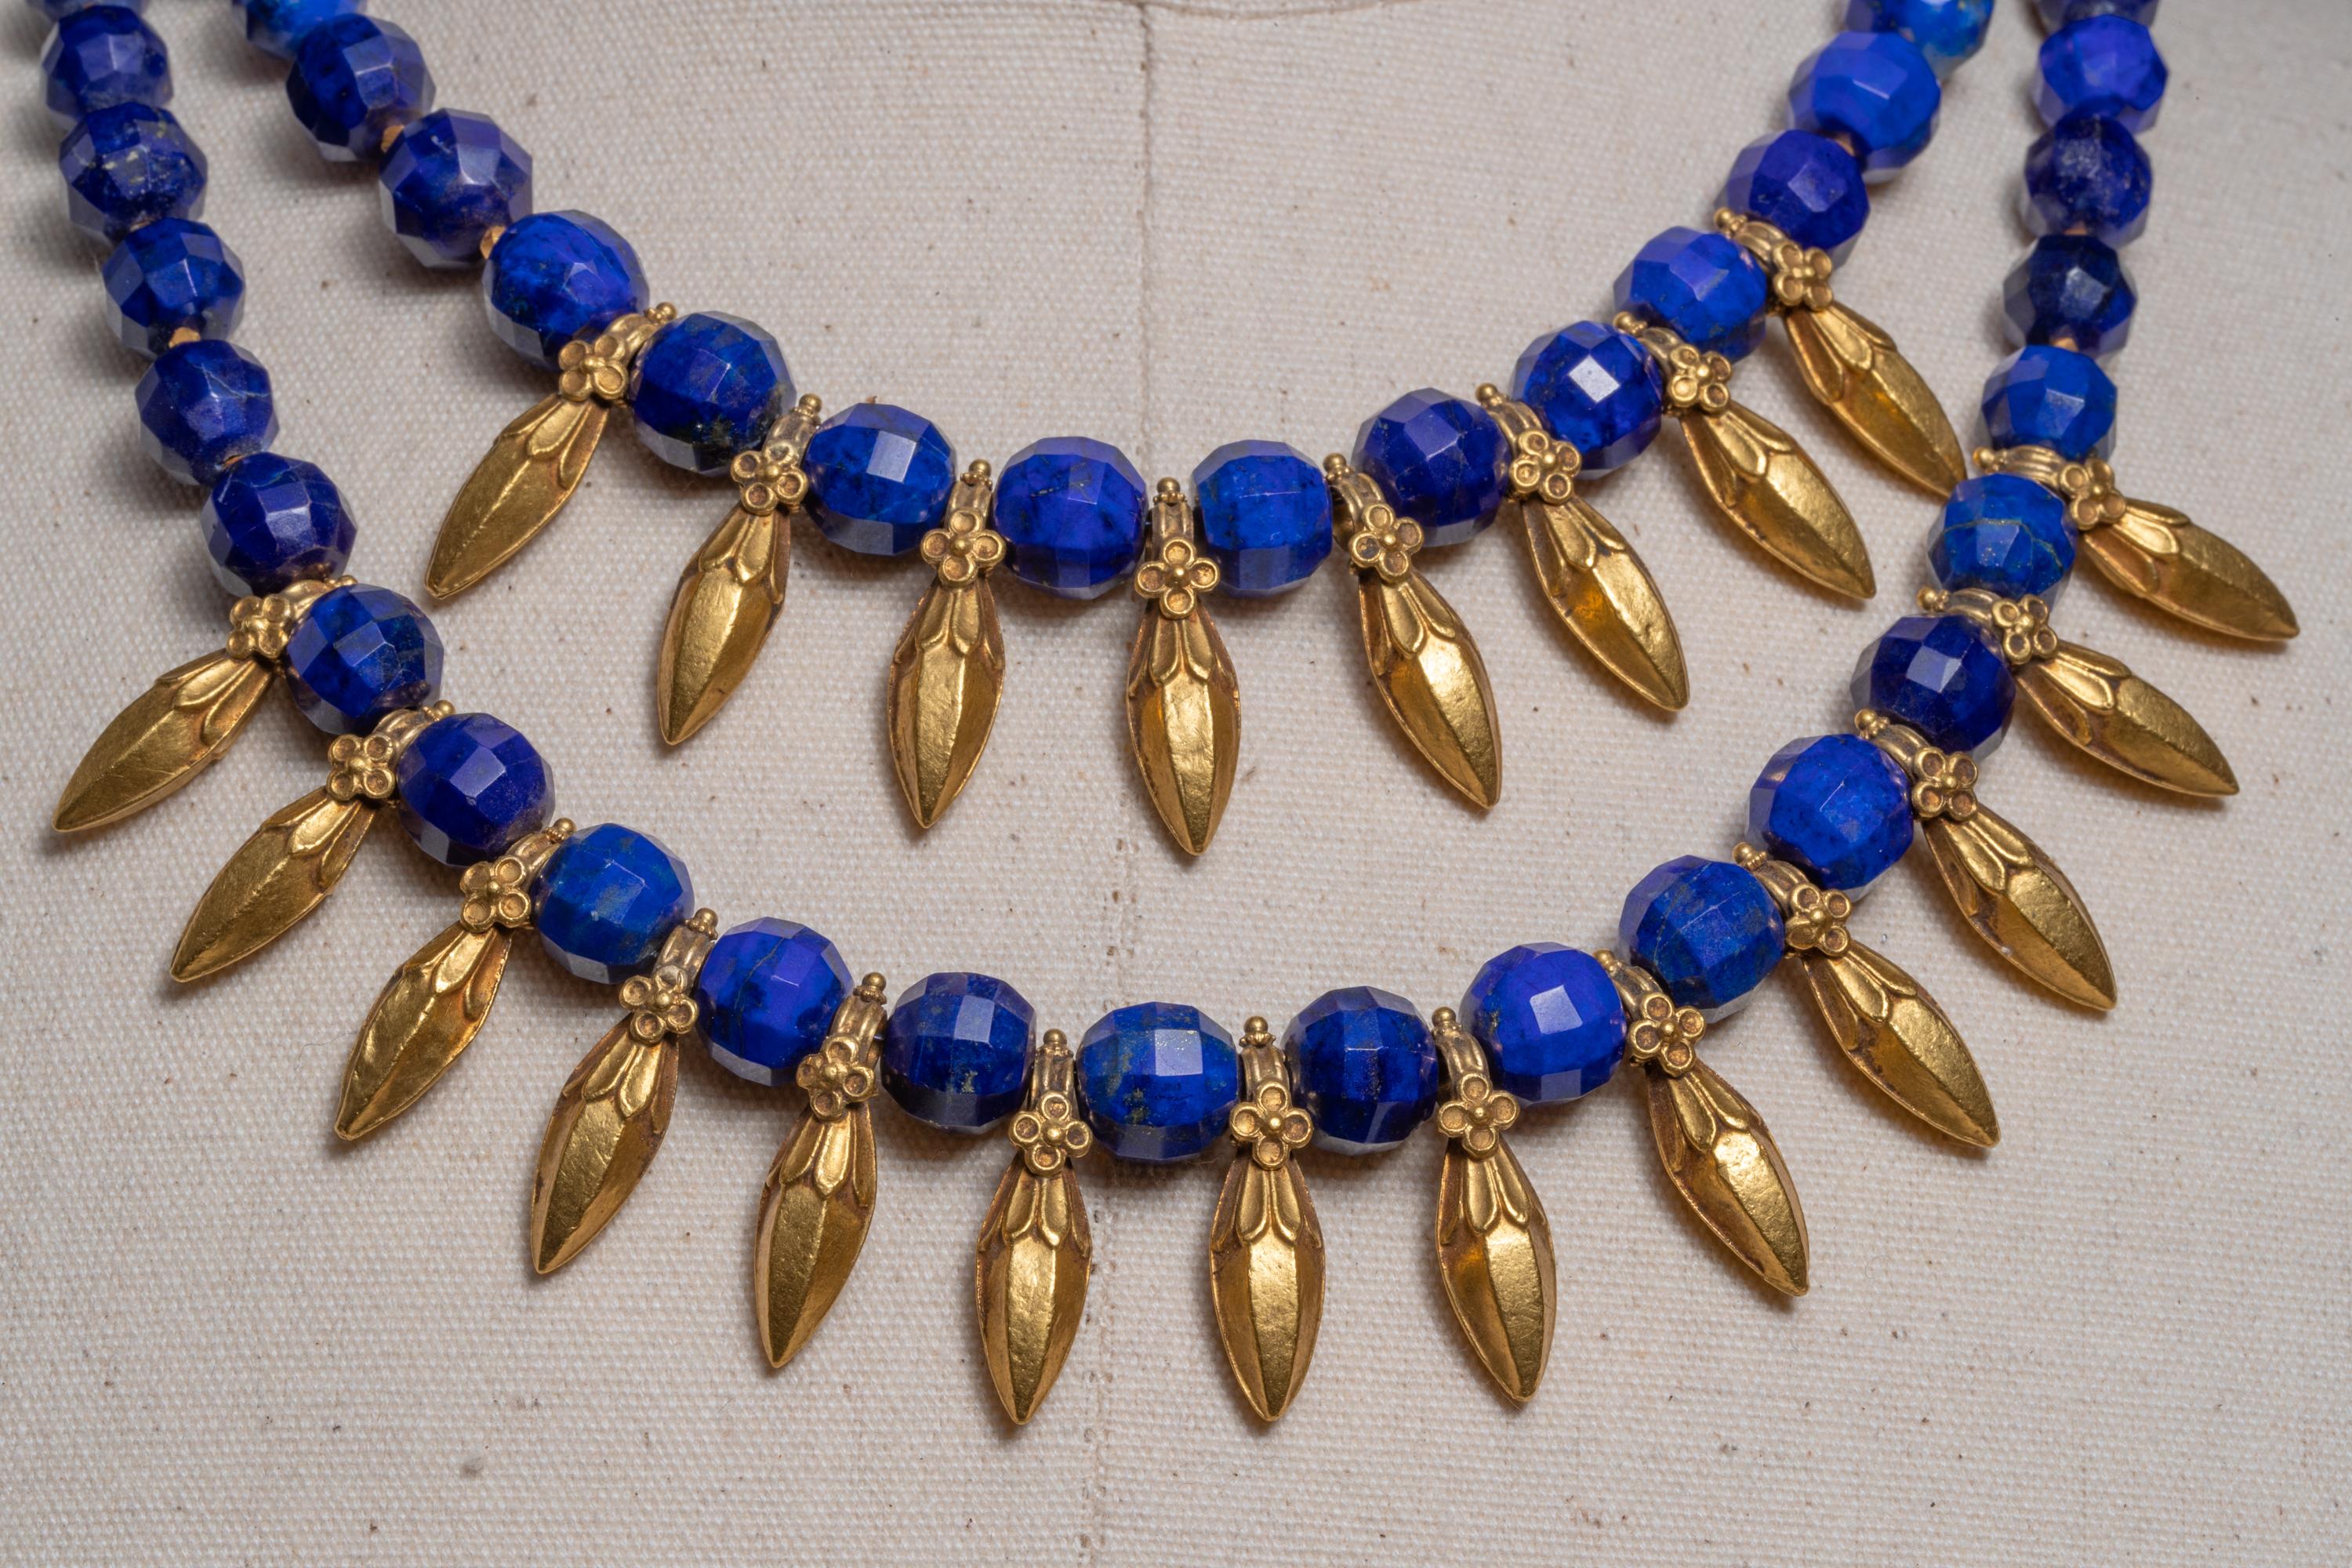 Une double ligne de pendentifs anciens en or 22 carats en forme de lance avec de fins détails associés à un lapis-lazuli bleu paon exquis.  Pour ajouter à leur caractère unique, ces perles de lapis sont facettées et les pendentifs en or présentent